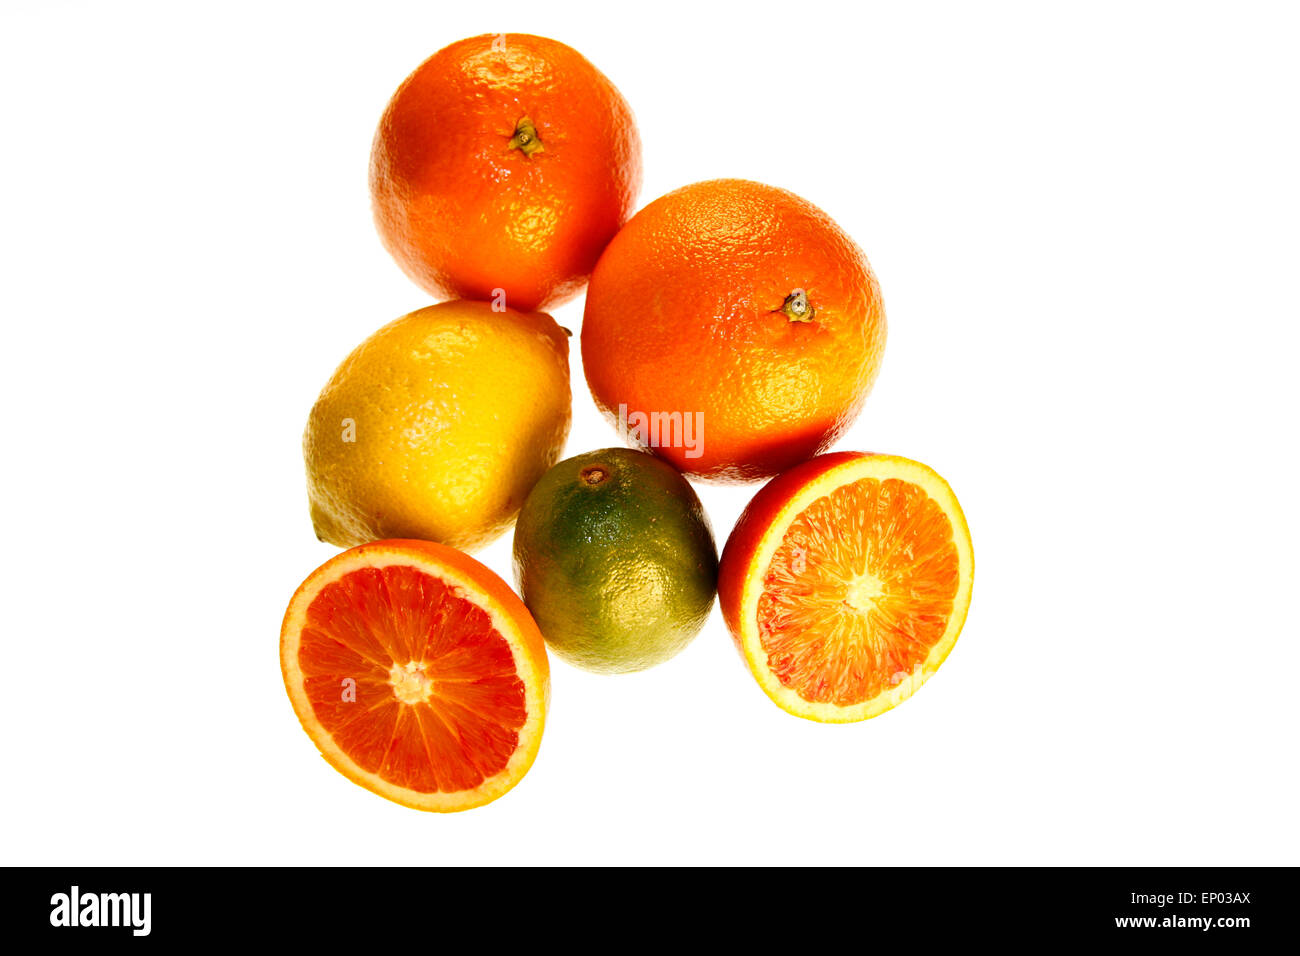 Suedfruechte: Blutorange, Zitrone, Orange, Limette - Symbolbild Nahrungsmittel. Stock Photo